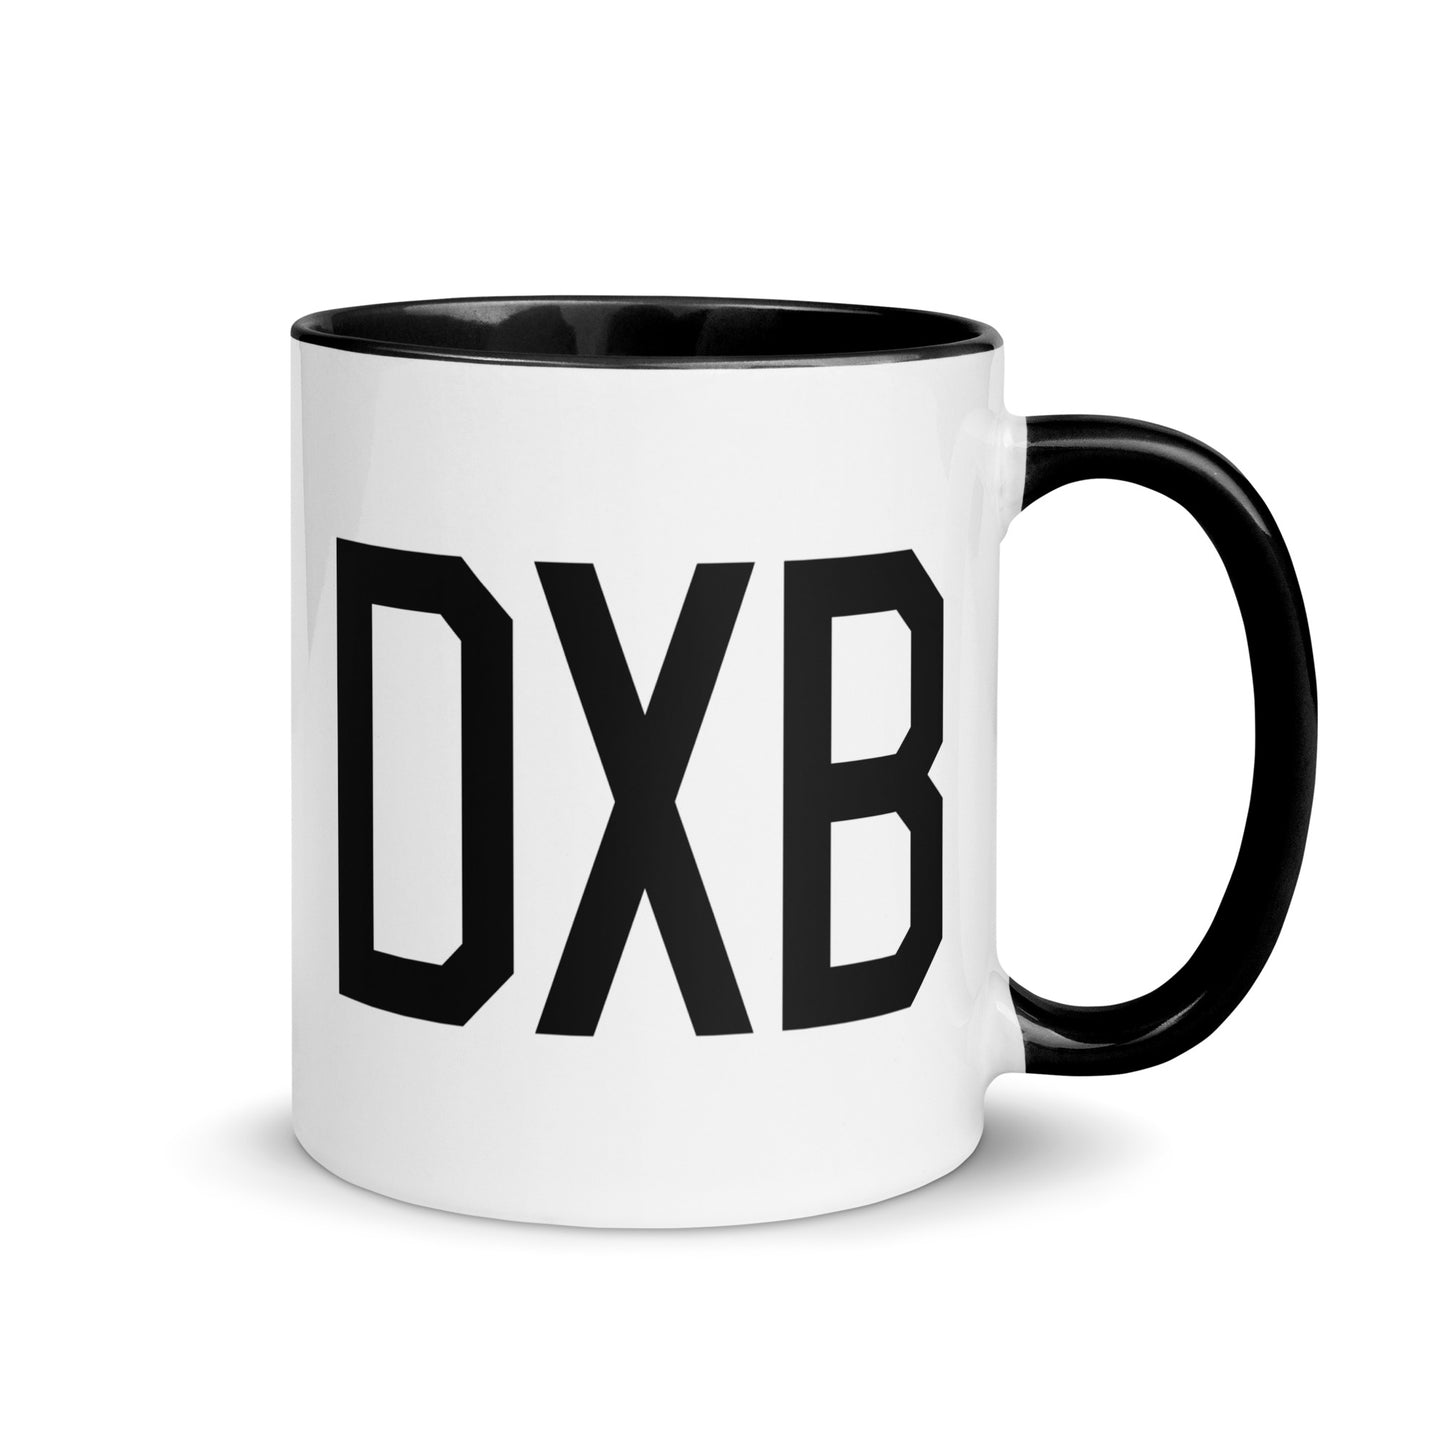 Airport Code Coffee Mug - Black • DXB Dubai • YHM Designs - Image 01